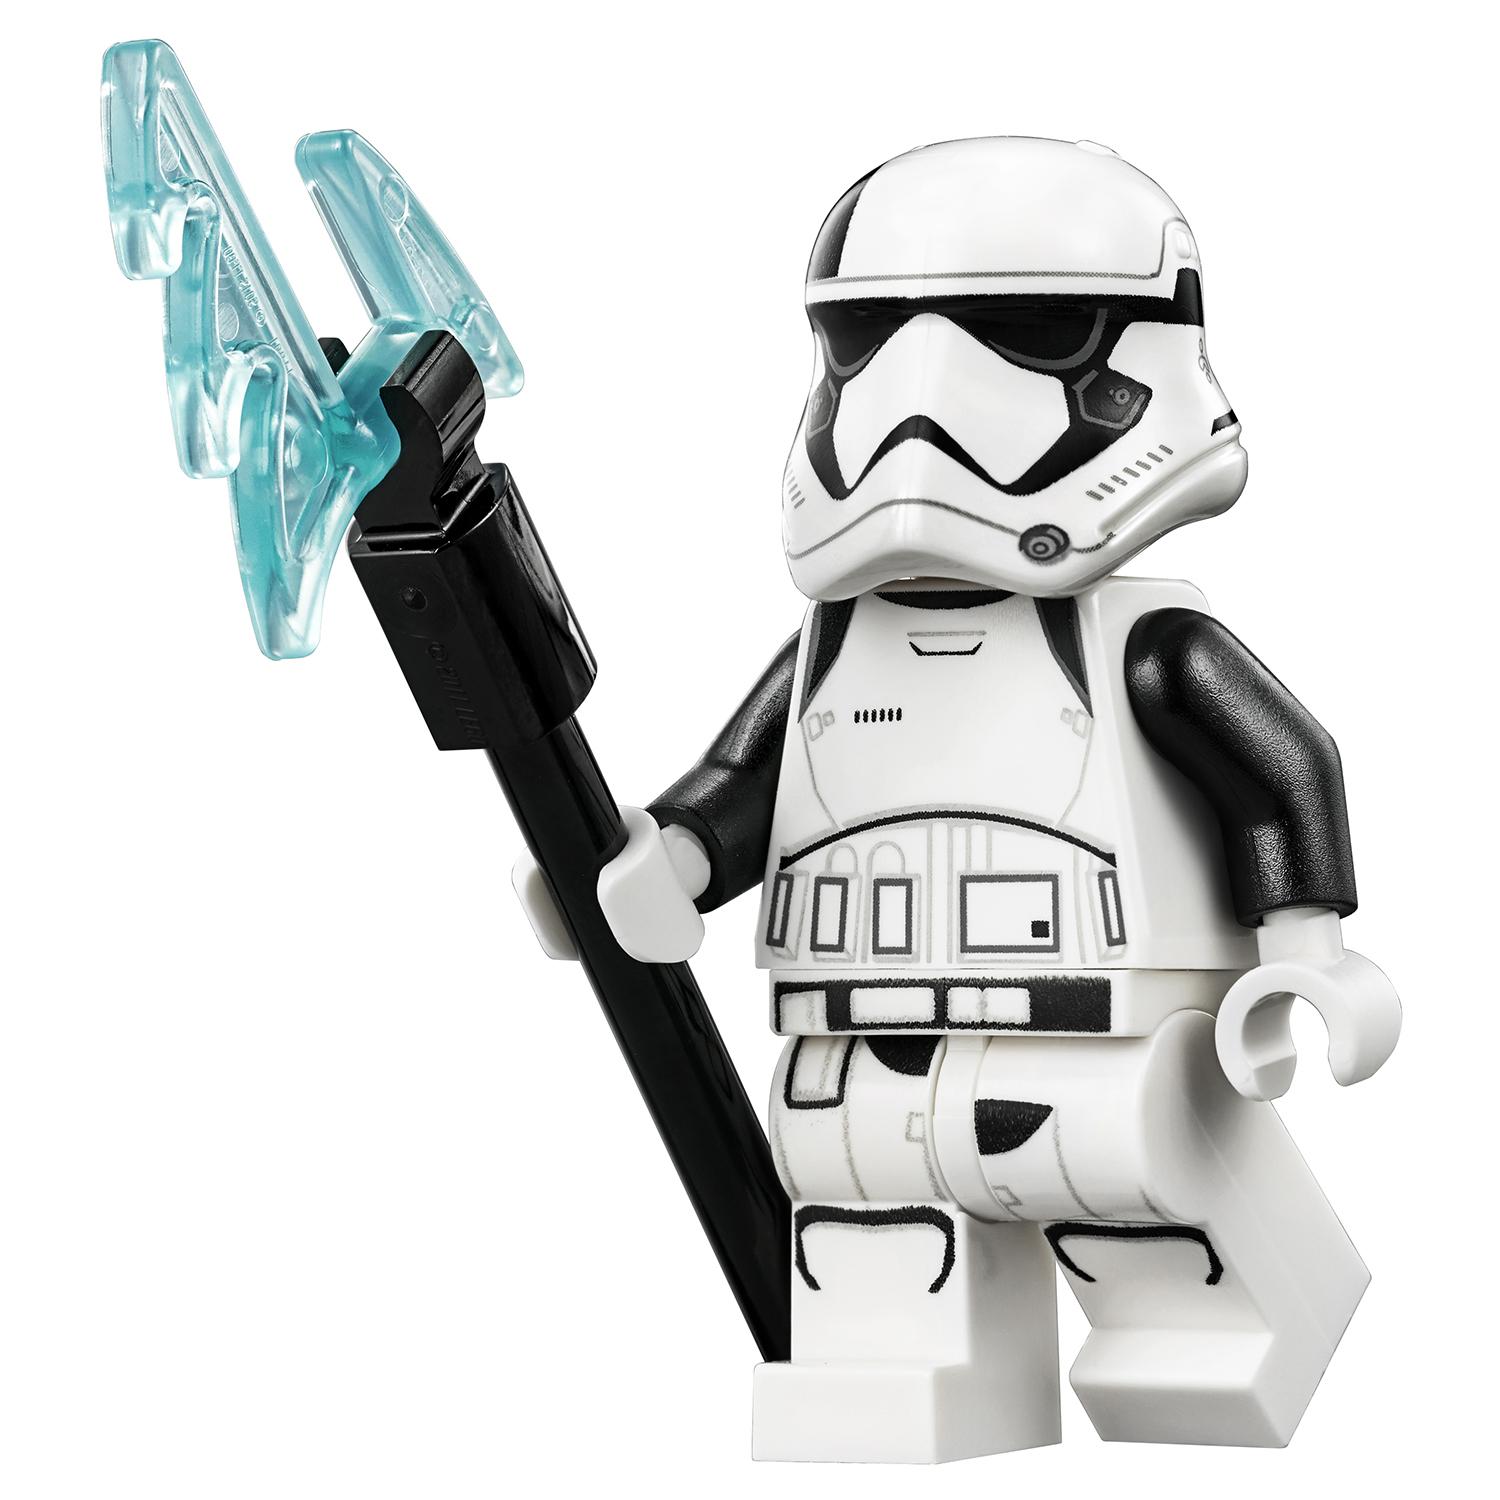 Lego Star Wars 75197 Боевой набор специалистов Первого Ордена